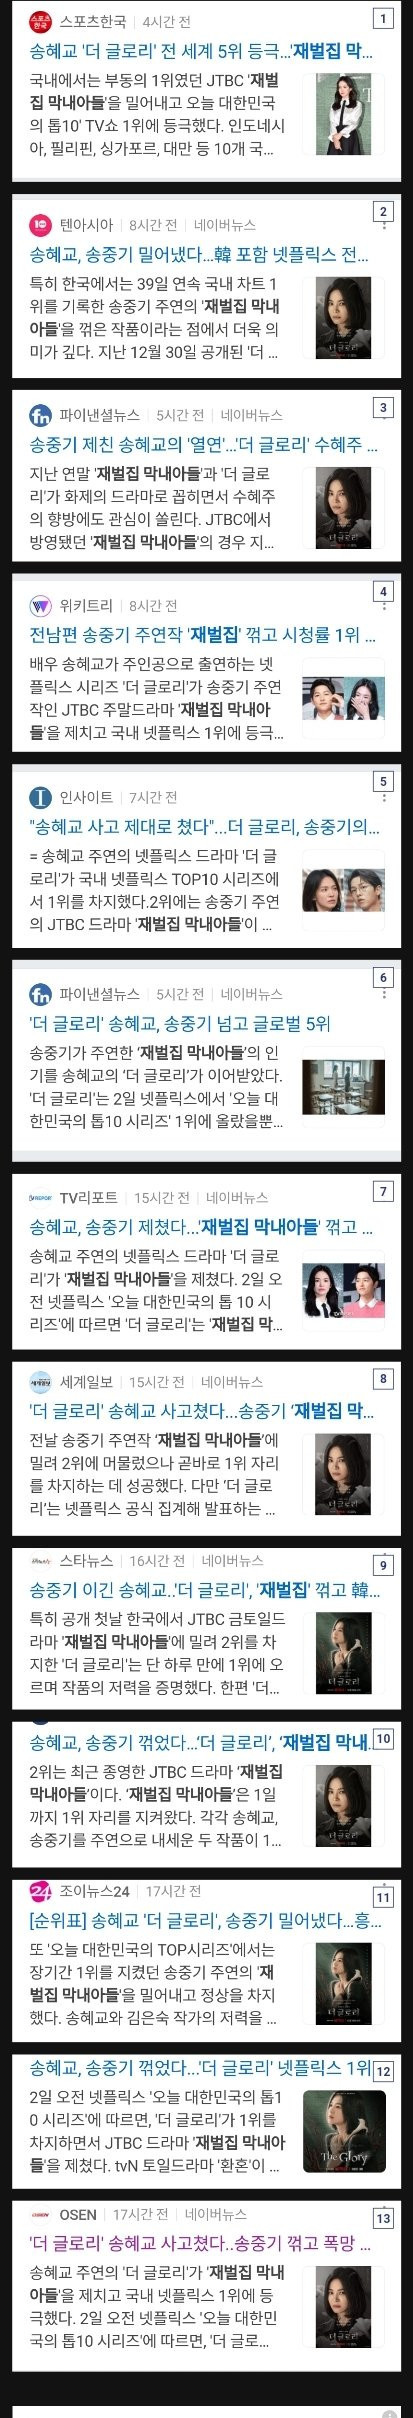 송혜교 더 글로리 홍보기사의 이상한 점